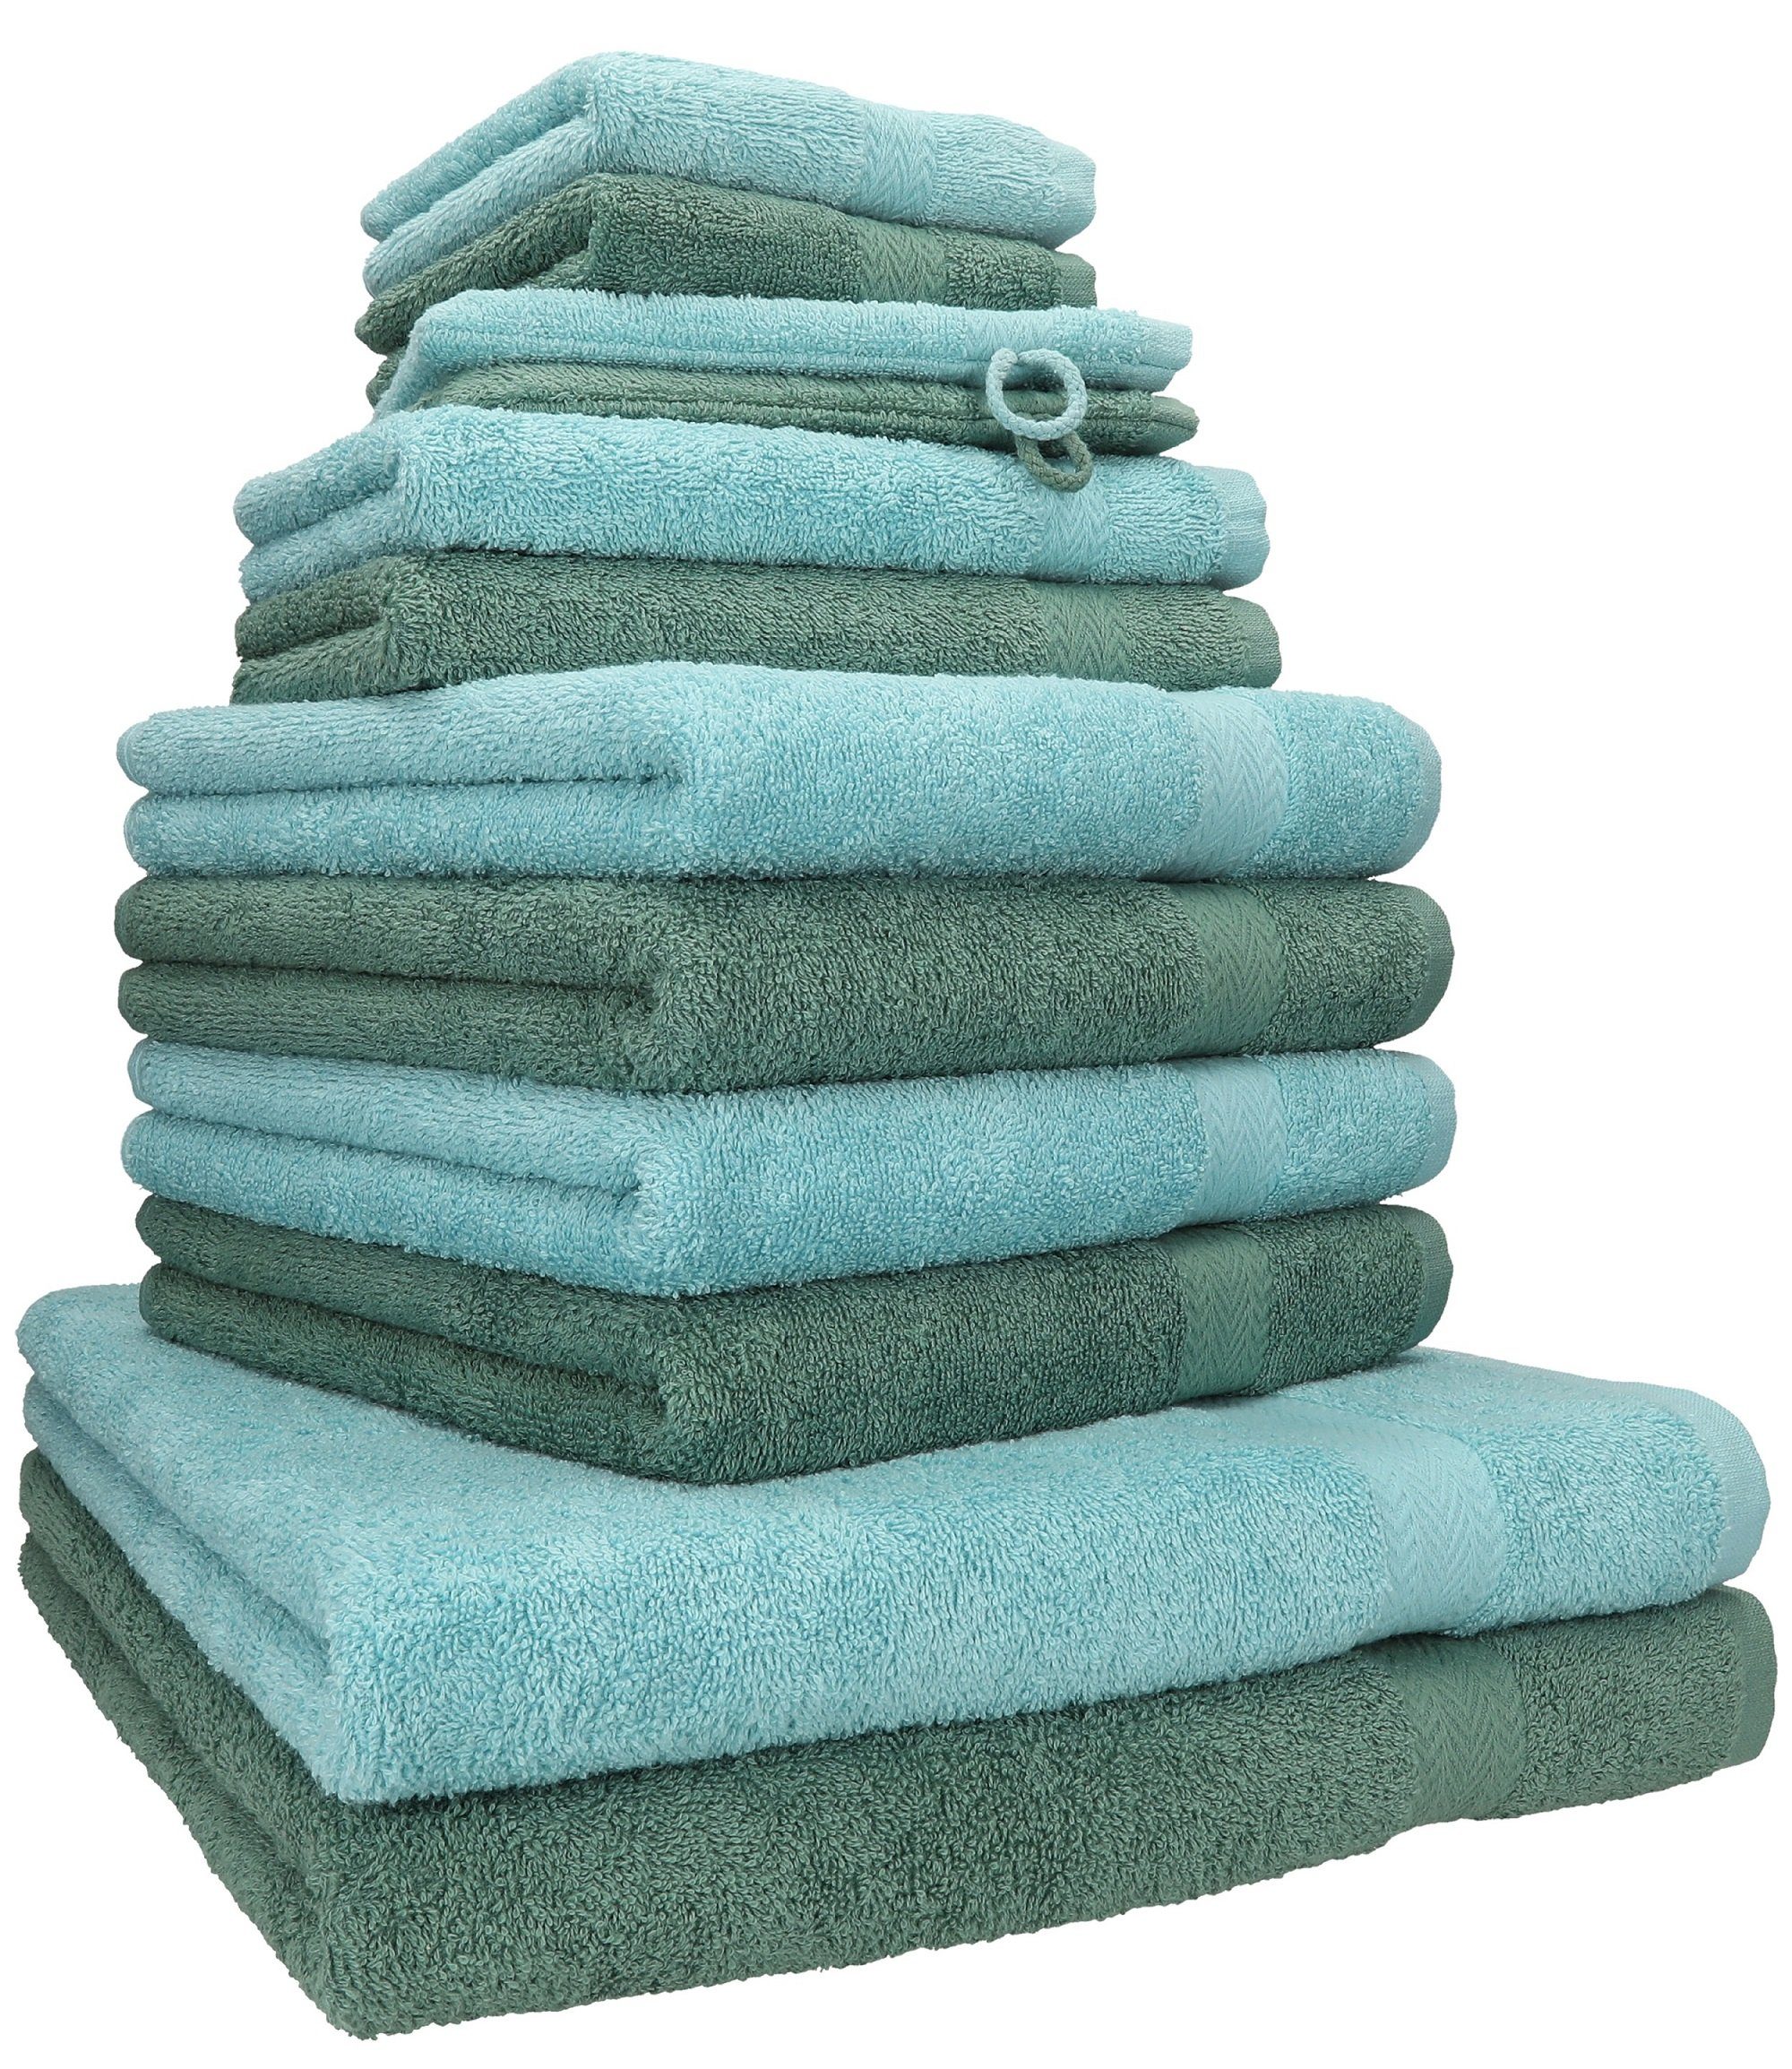 Betz Handtuch Set 12-tlg. Handtuch Set Premium Farbe Ocean/tannengrün, 100% Baumwolle, (12-tlg)